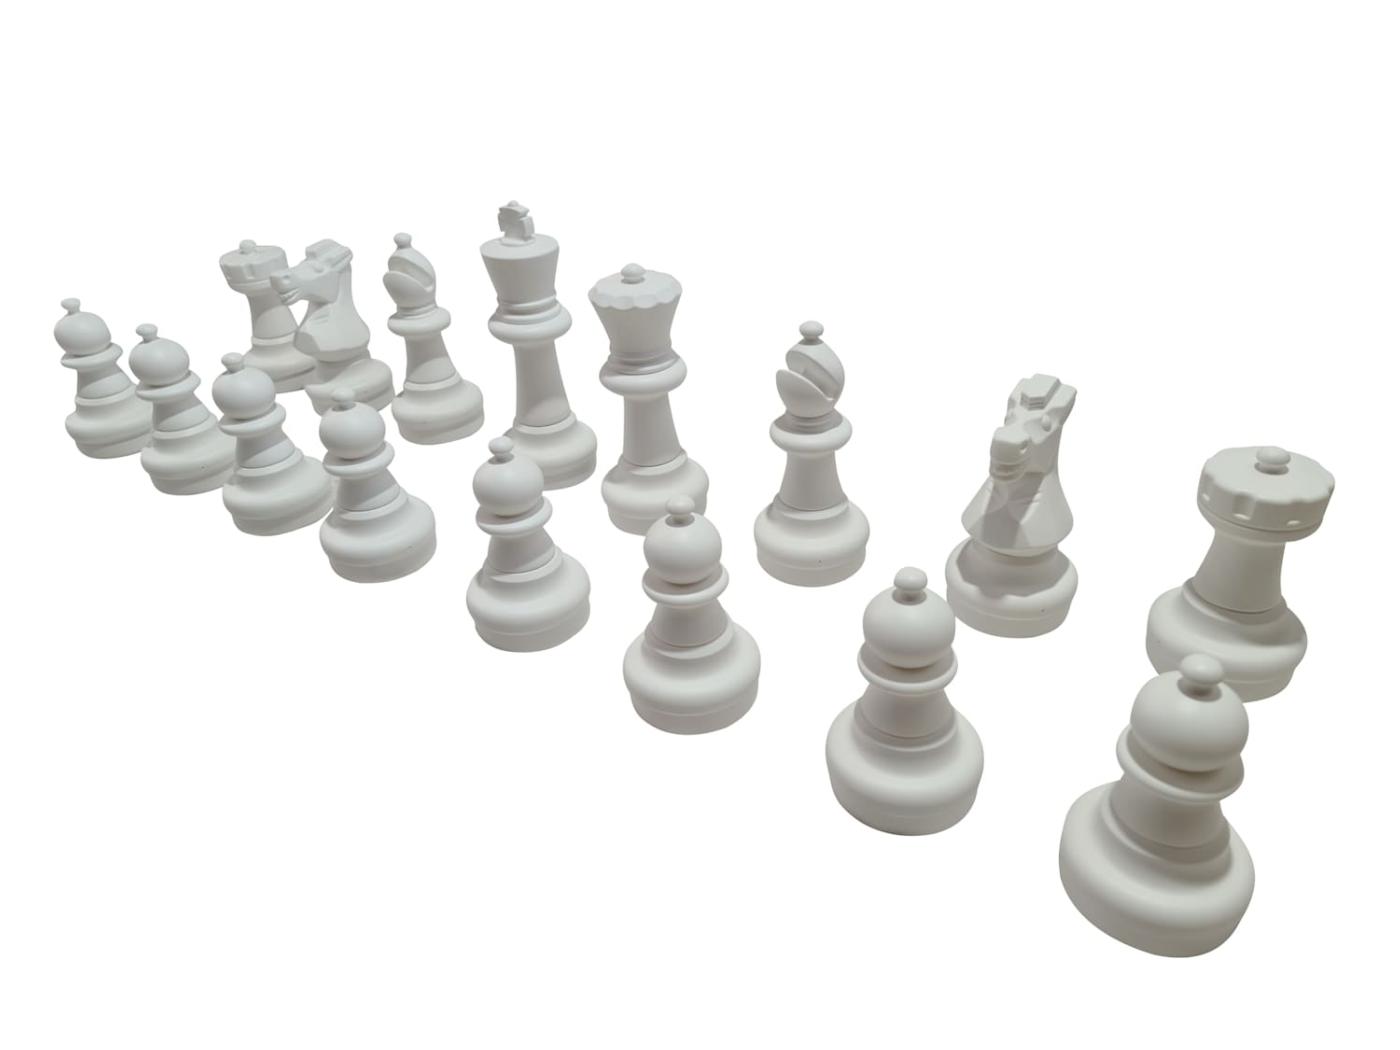 Piezas de ajedrez gigante